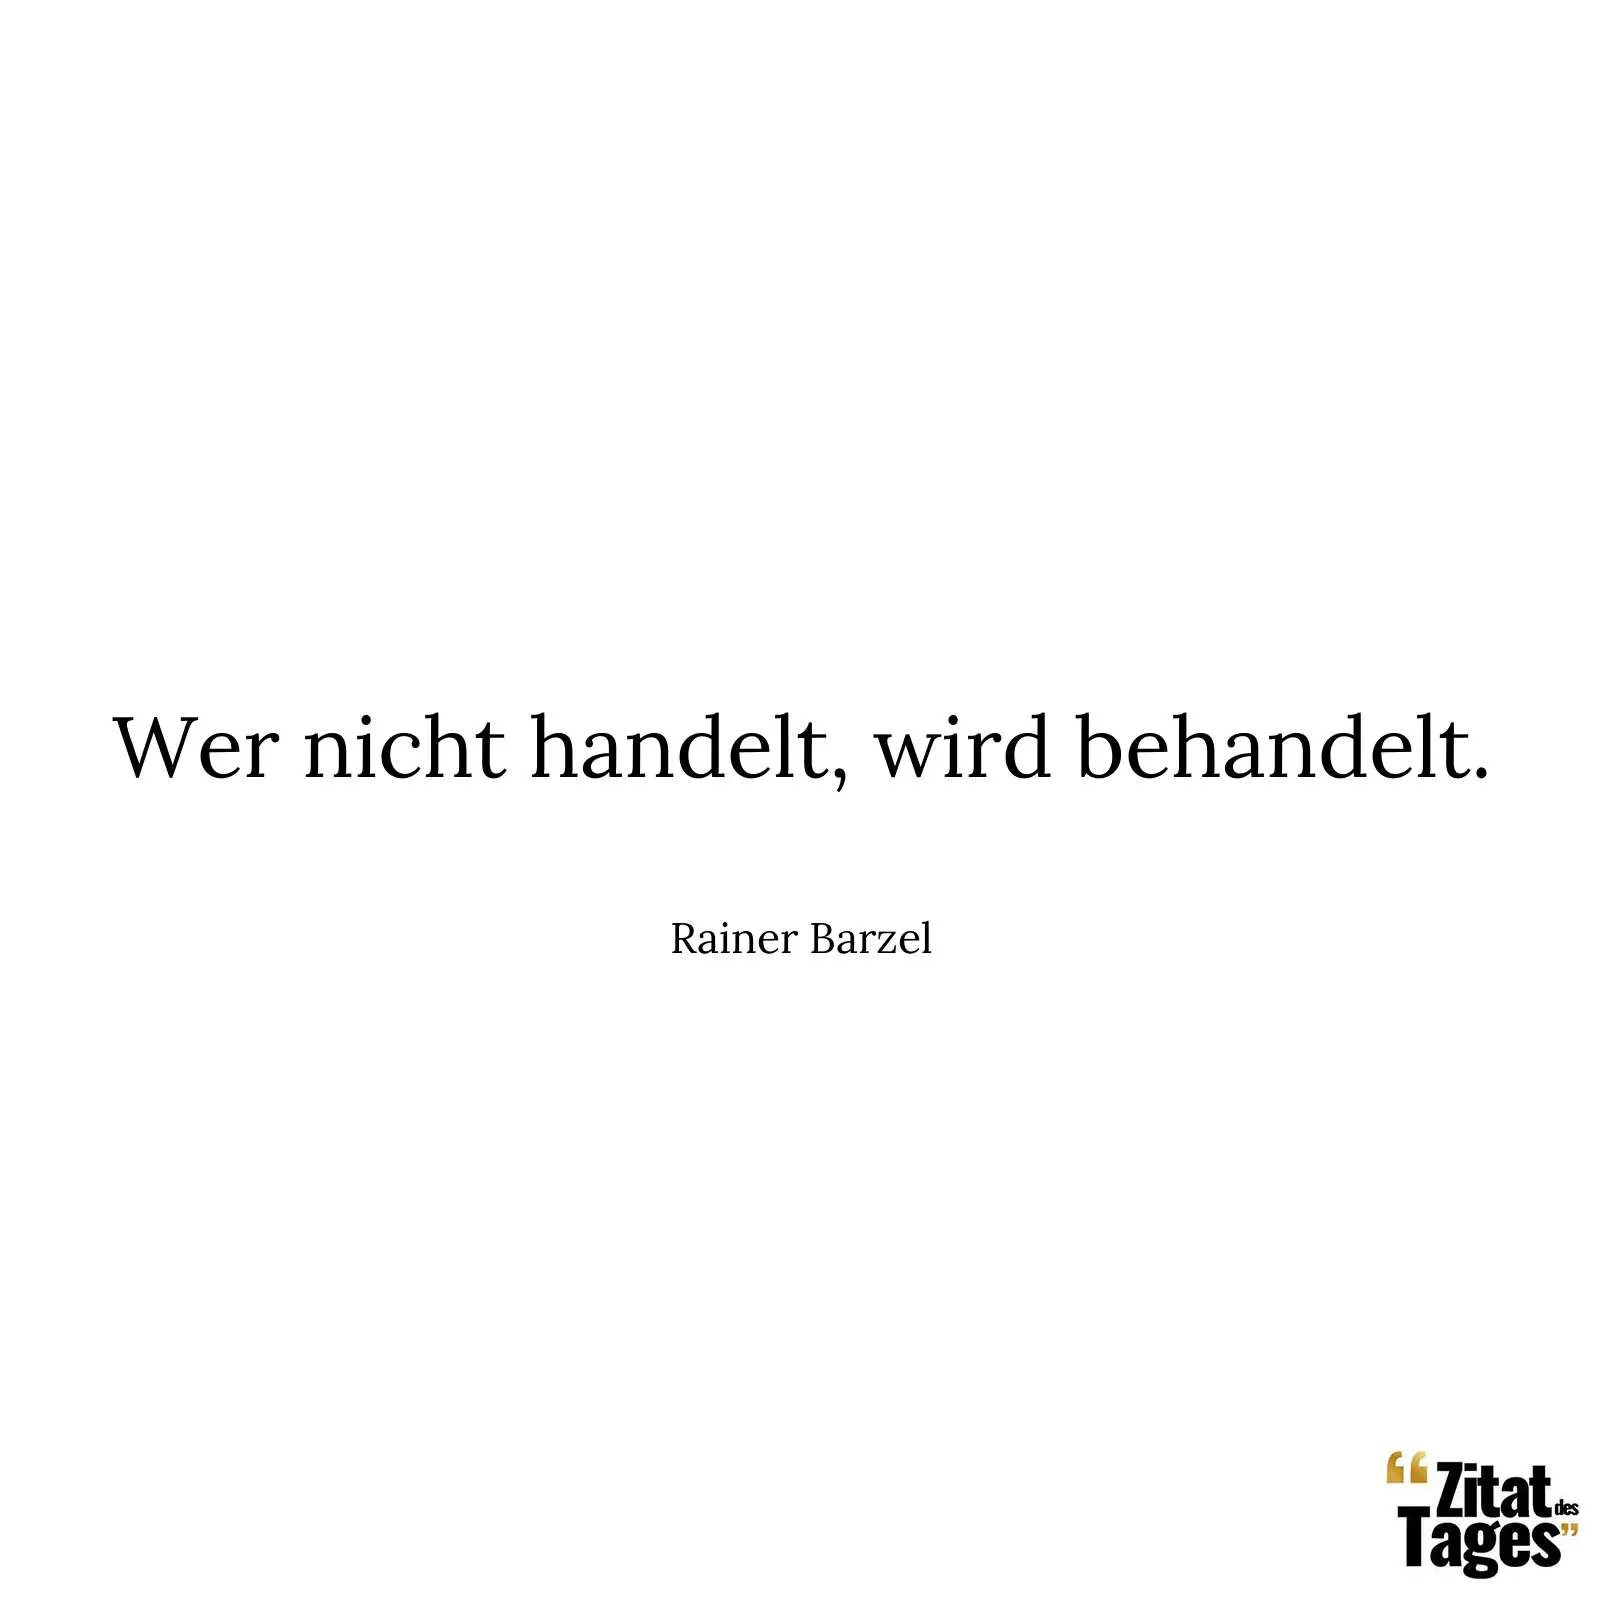 Wer nicht handelt, wird behandelt. - Rainer Barzel